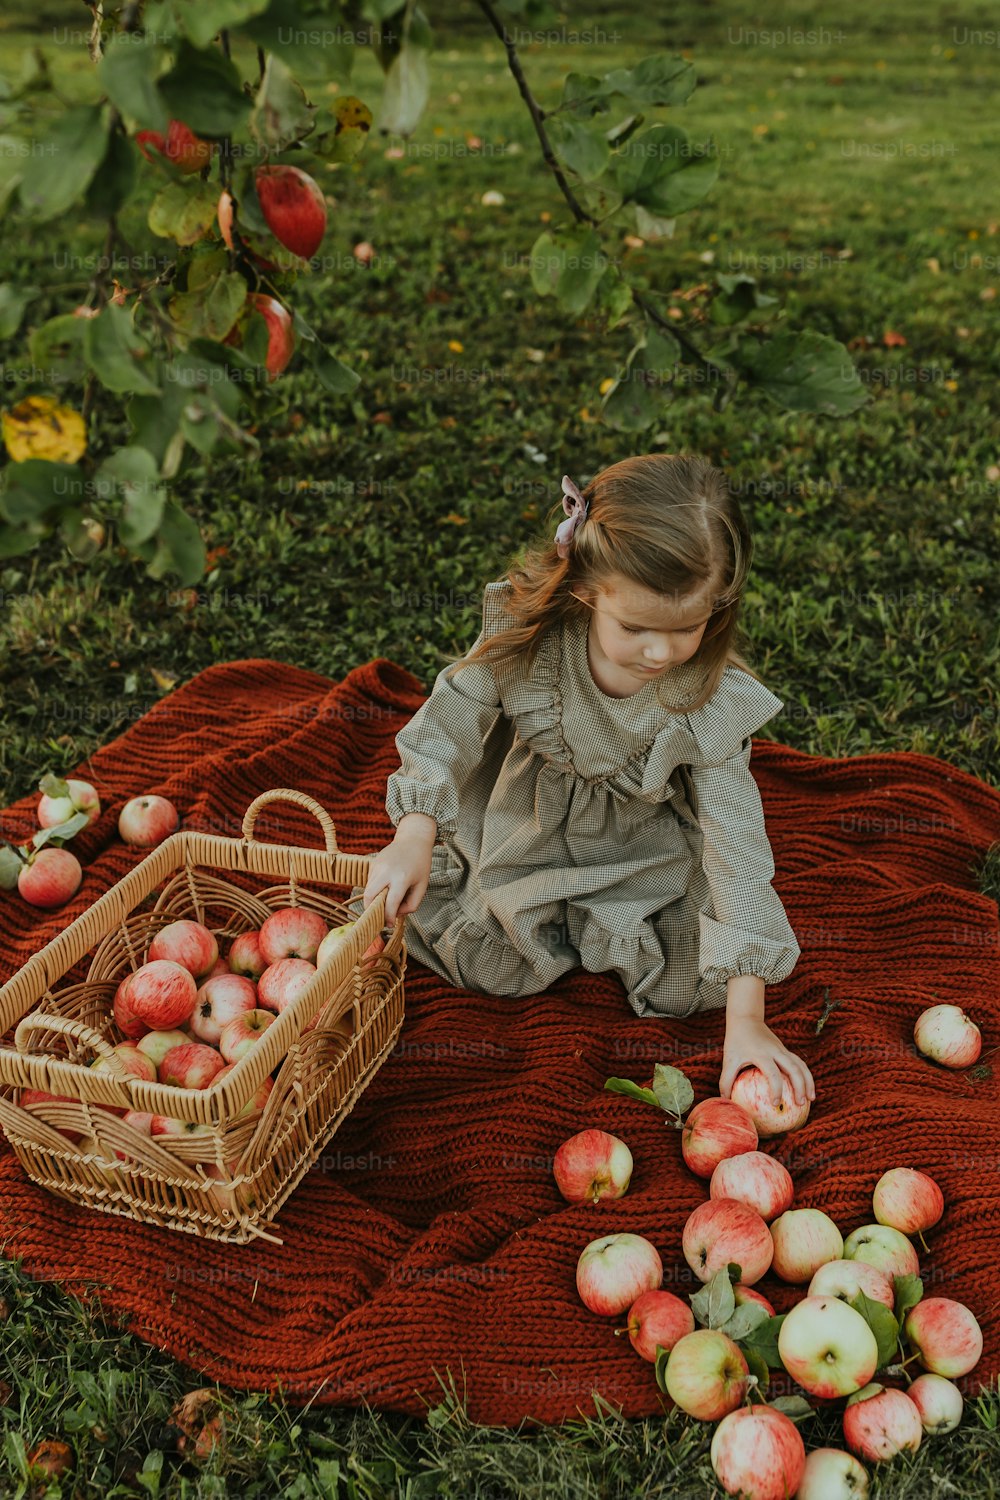 かごにリンゴを入れた毛布の上に座っている少女